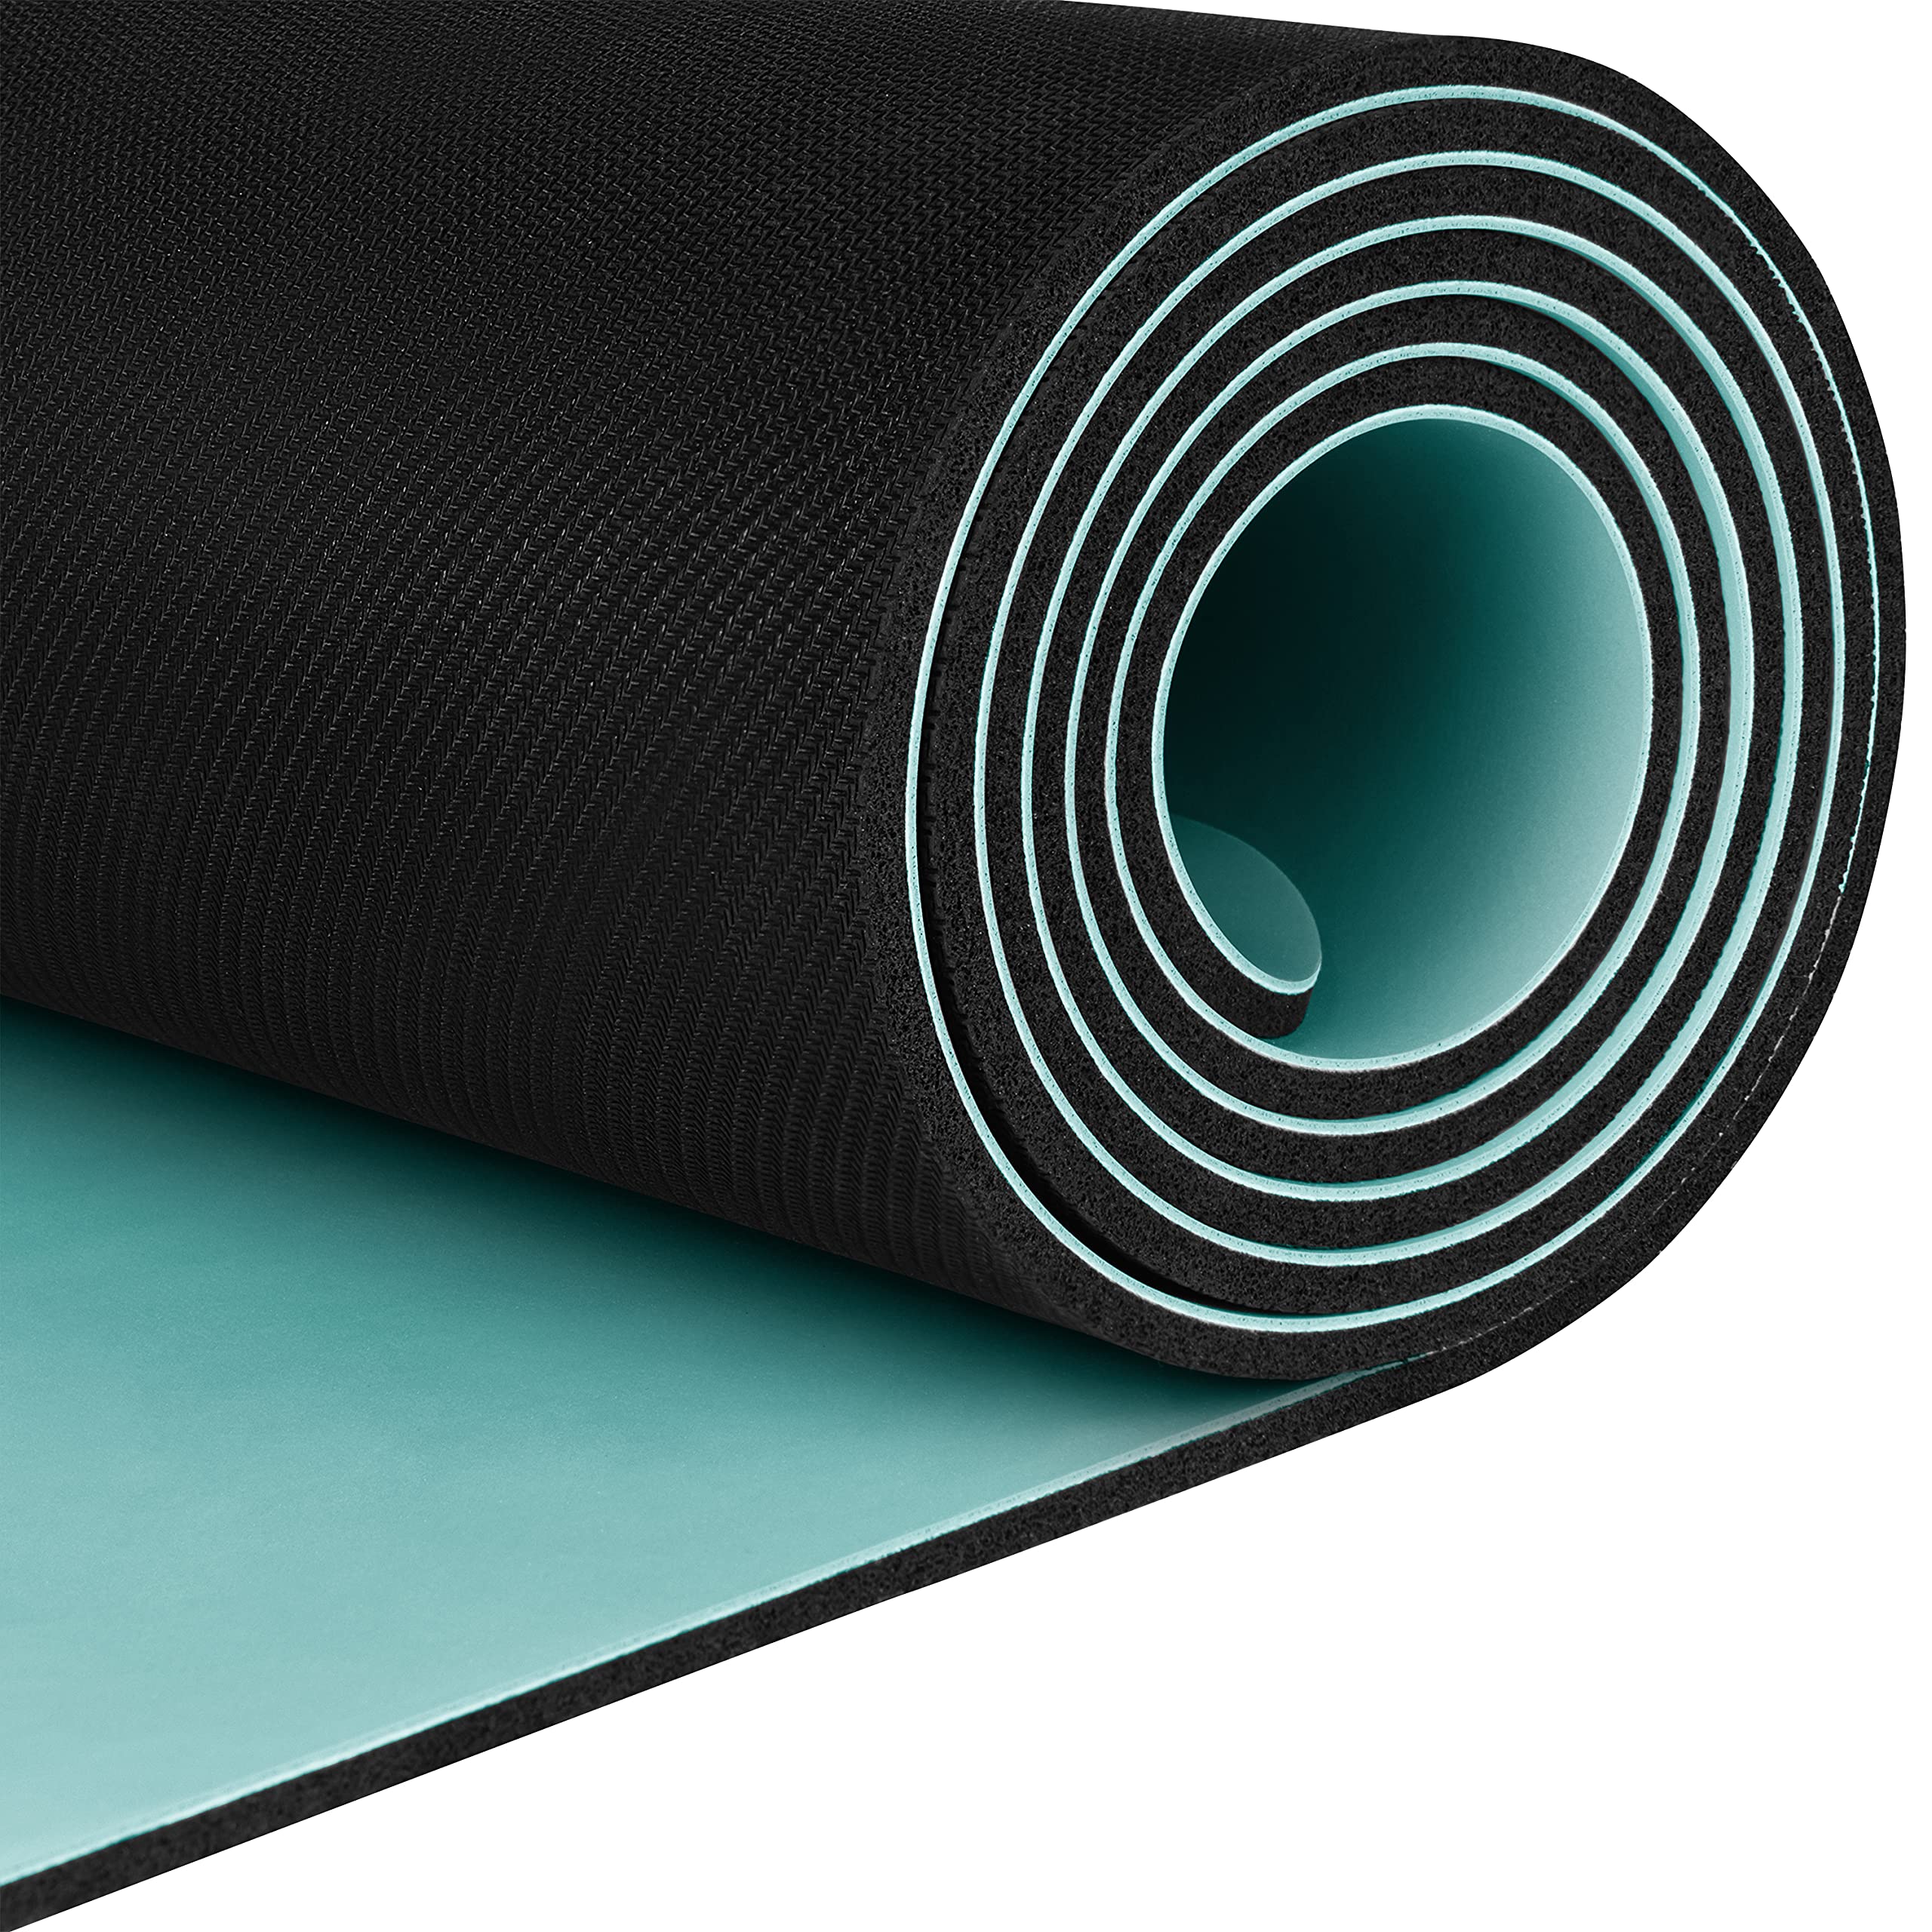 Retrospec Laguna 5mm Yoga Mat - Fitness Mat for Women, Men & Children